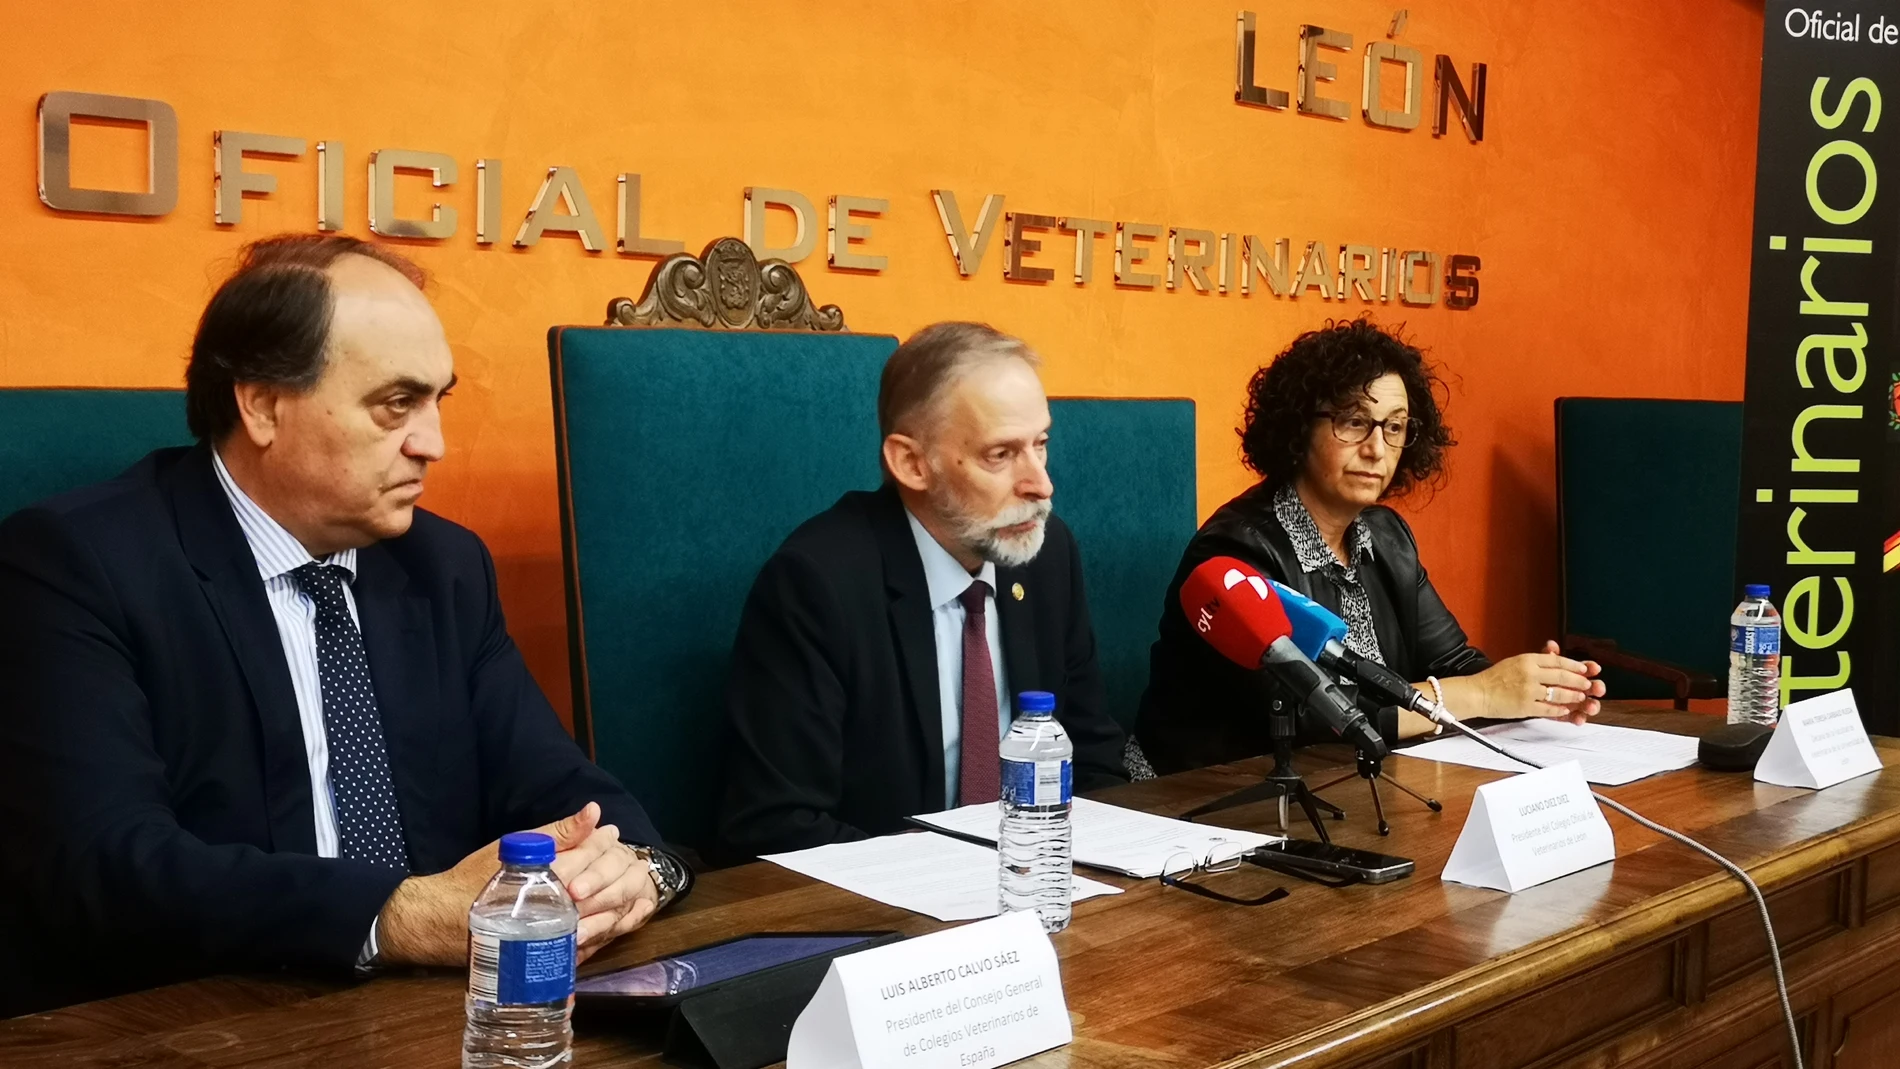 Presentación del Congreso que se celebrará en León